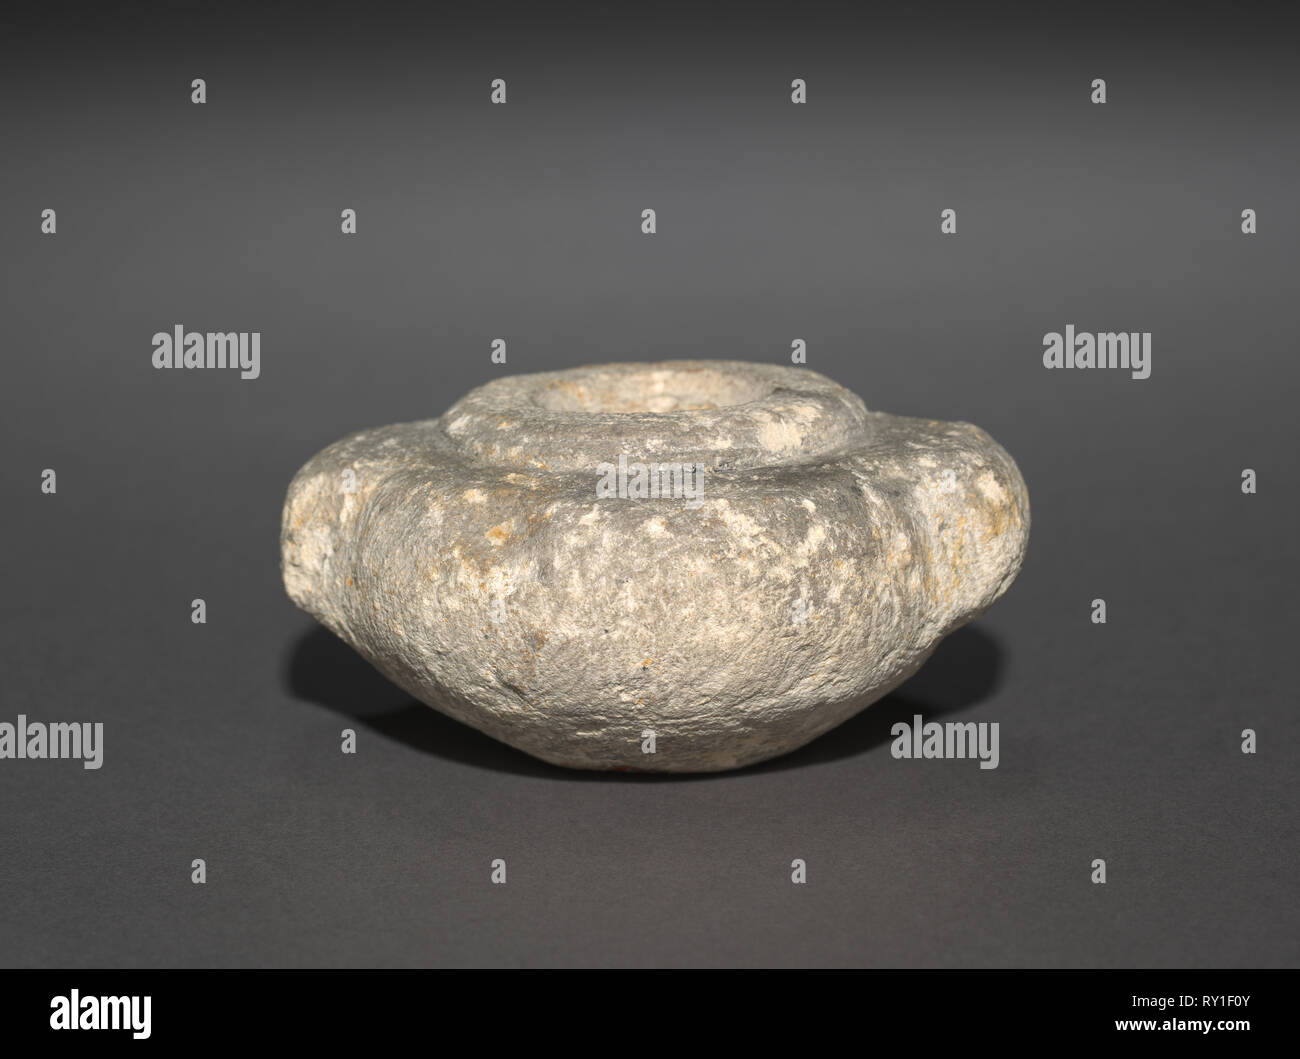 Hocke Dummy Jar mit Kabelschuh Griffe, 2770-2573 BC. Ägypten, wahrscheinlich Saqqara, nördlich der Stufenpyramide, Ausgrabungen von J.E.Quibell, 1910-1911, Prädynastischen, Dynastien 2-3, 2770-2573 BC. Sandstein; Durchmesser: 7,4 cm (2 15/16 in.) Durchmesser der Öffnung: 2,5 cm (1 in.); insgesamt: 3,5 cm (1 3/8 in Stockfoto